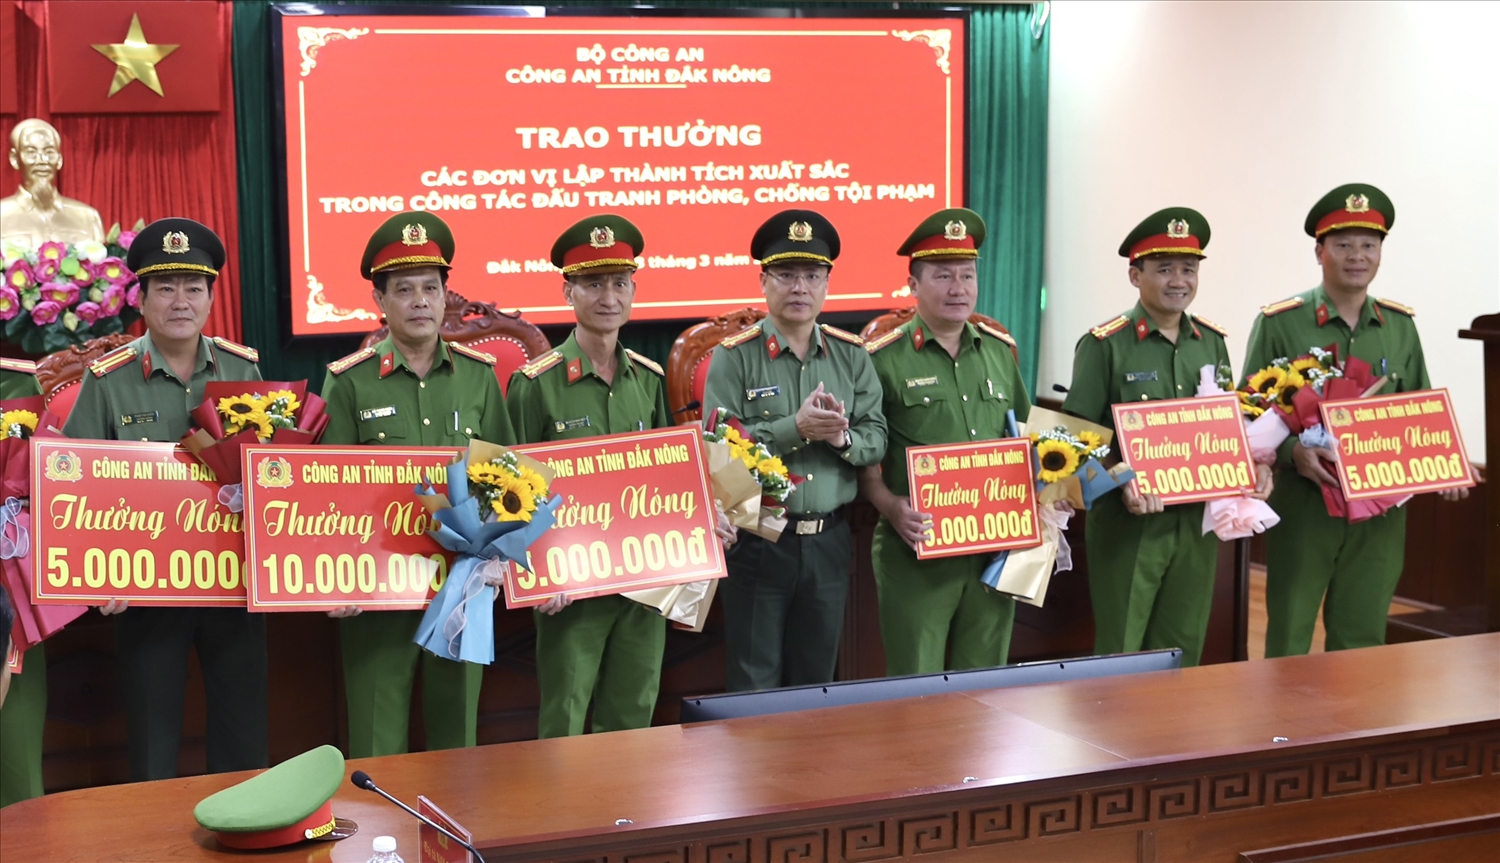 Đại tá Nguyễn Thanh Liêm, Giám đốc Công an tỉnh Đắk Nông trao thưởng cho các đơn vị thành tích xuất sắc trong khám phá nhanh vụ trộm cắp vàng